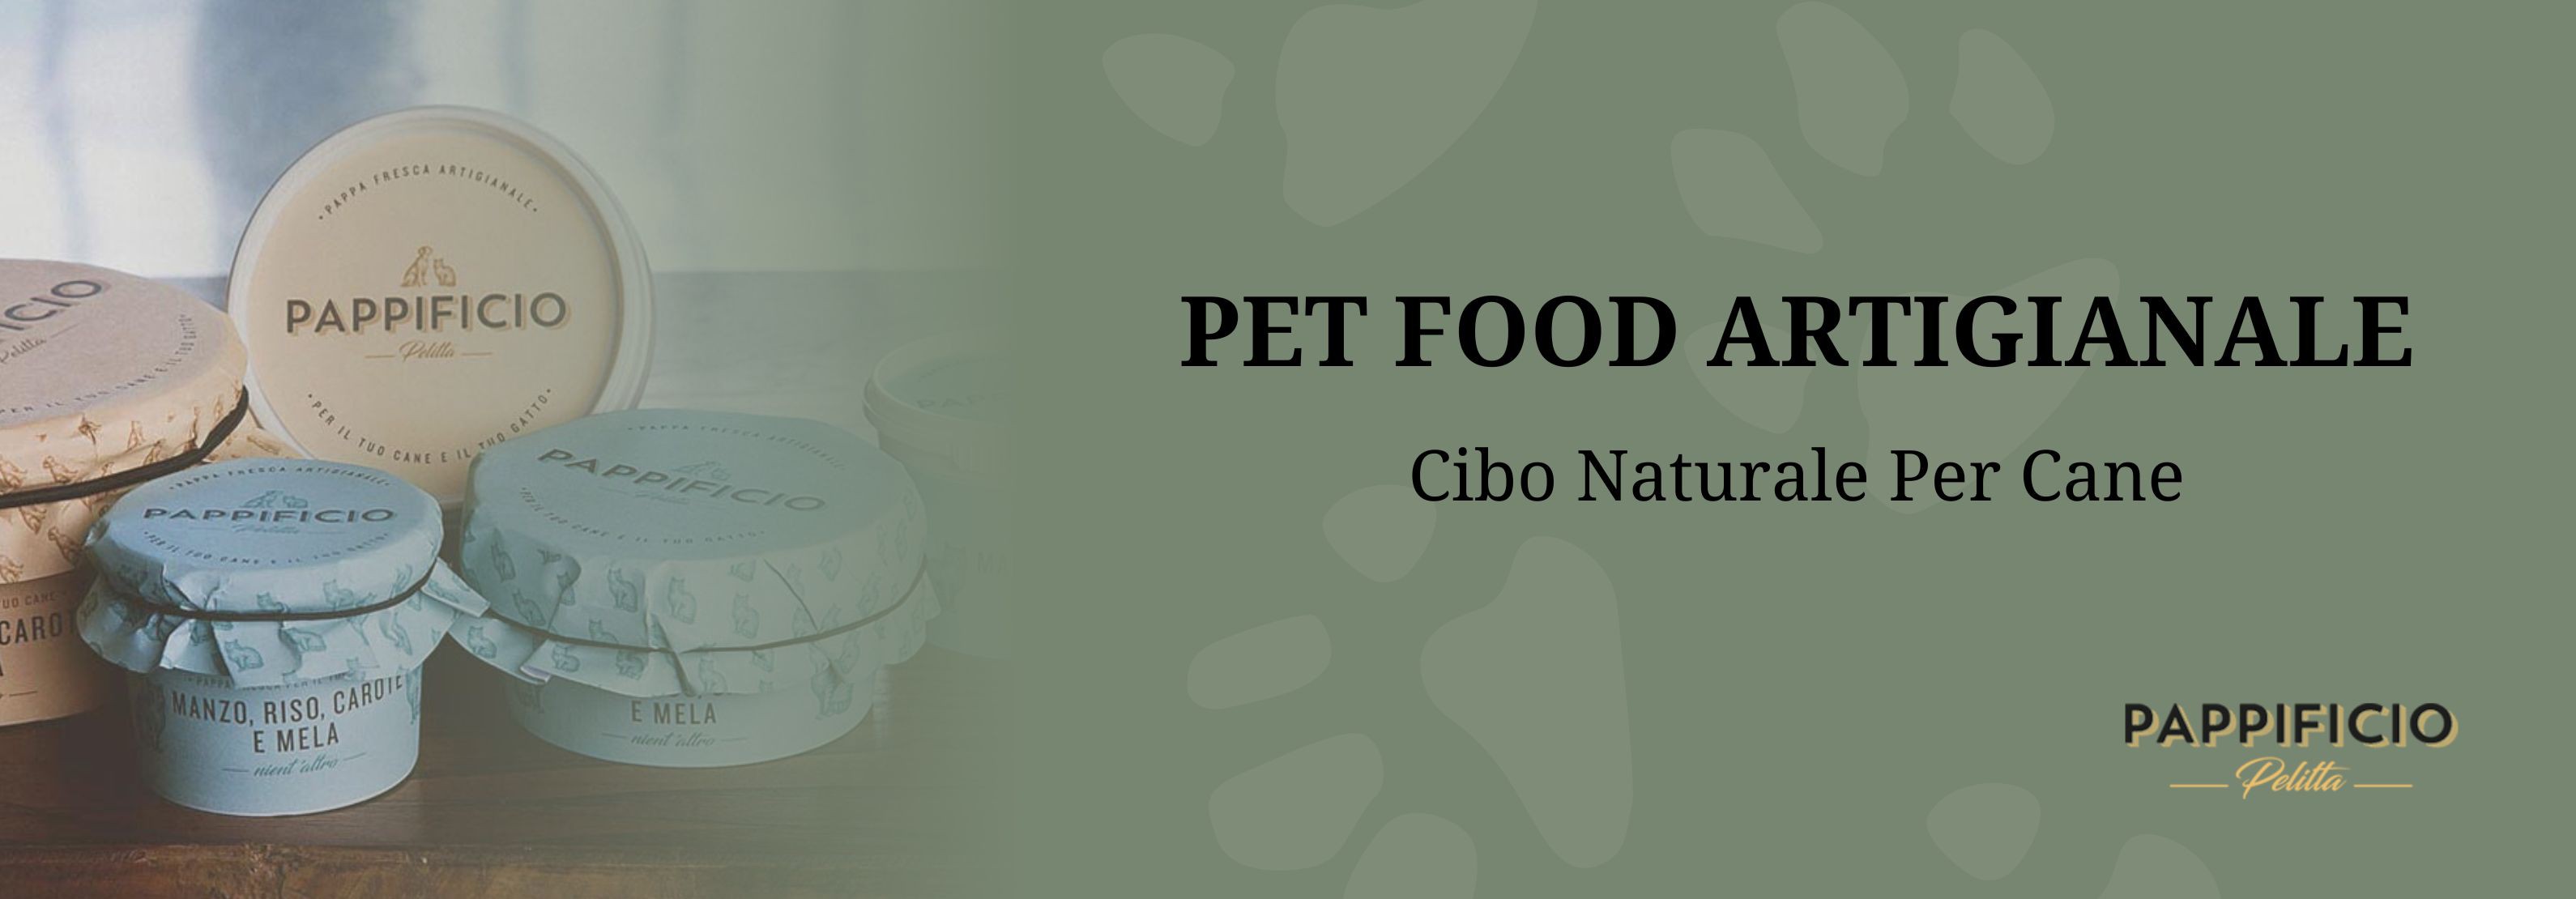 Pet Food Artigianale